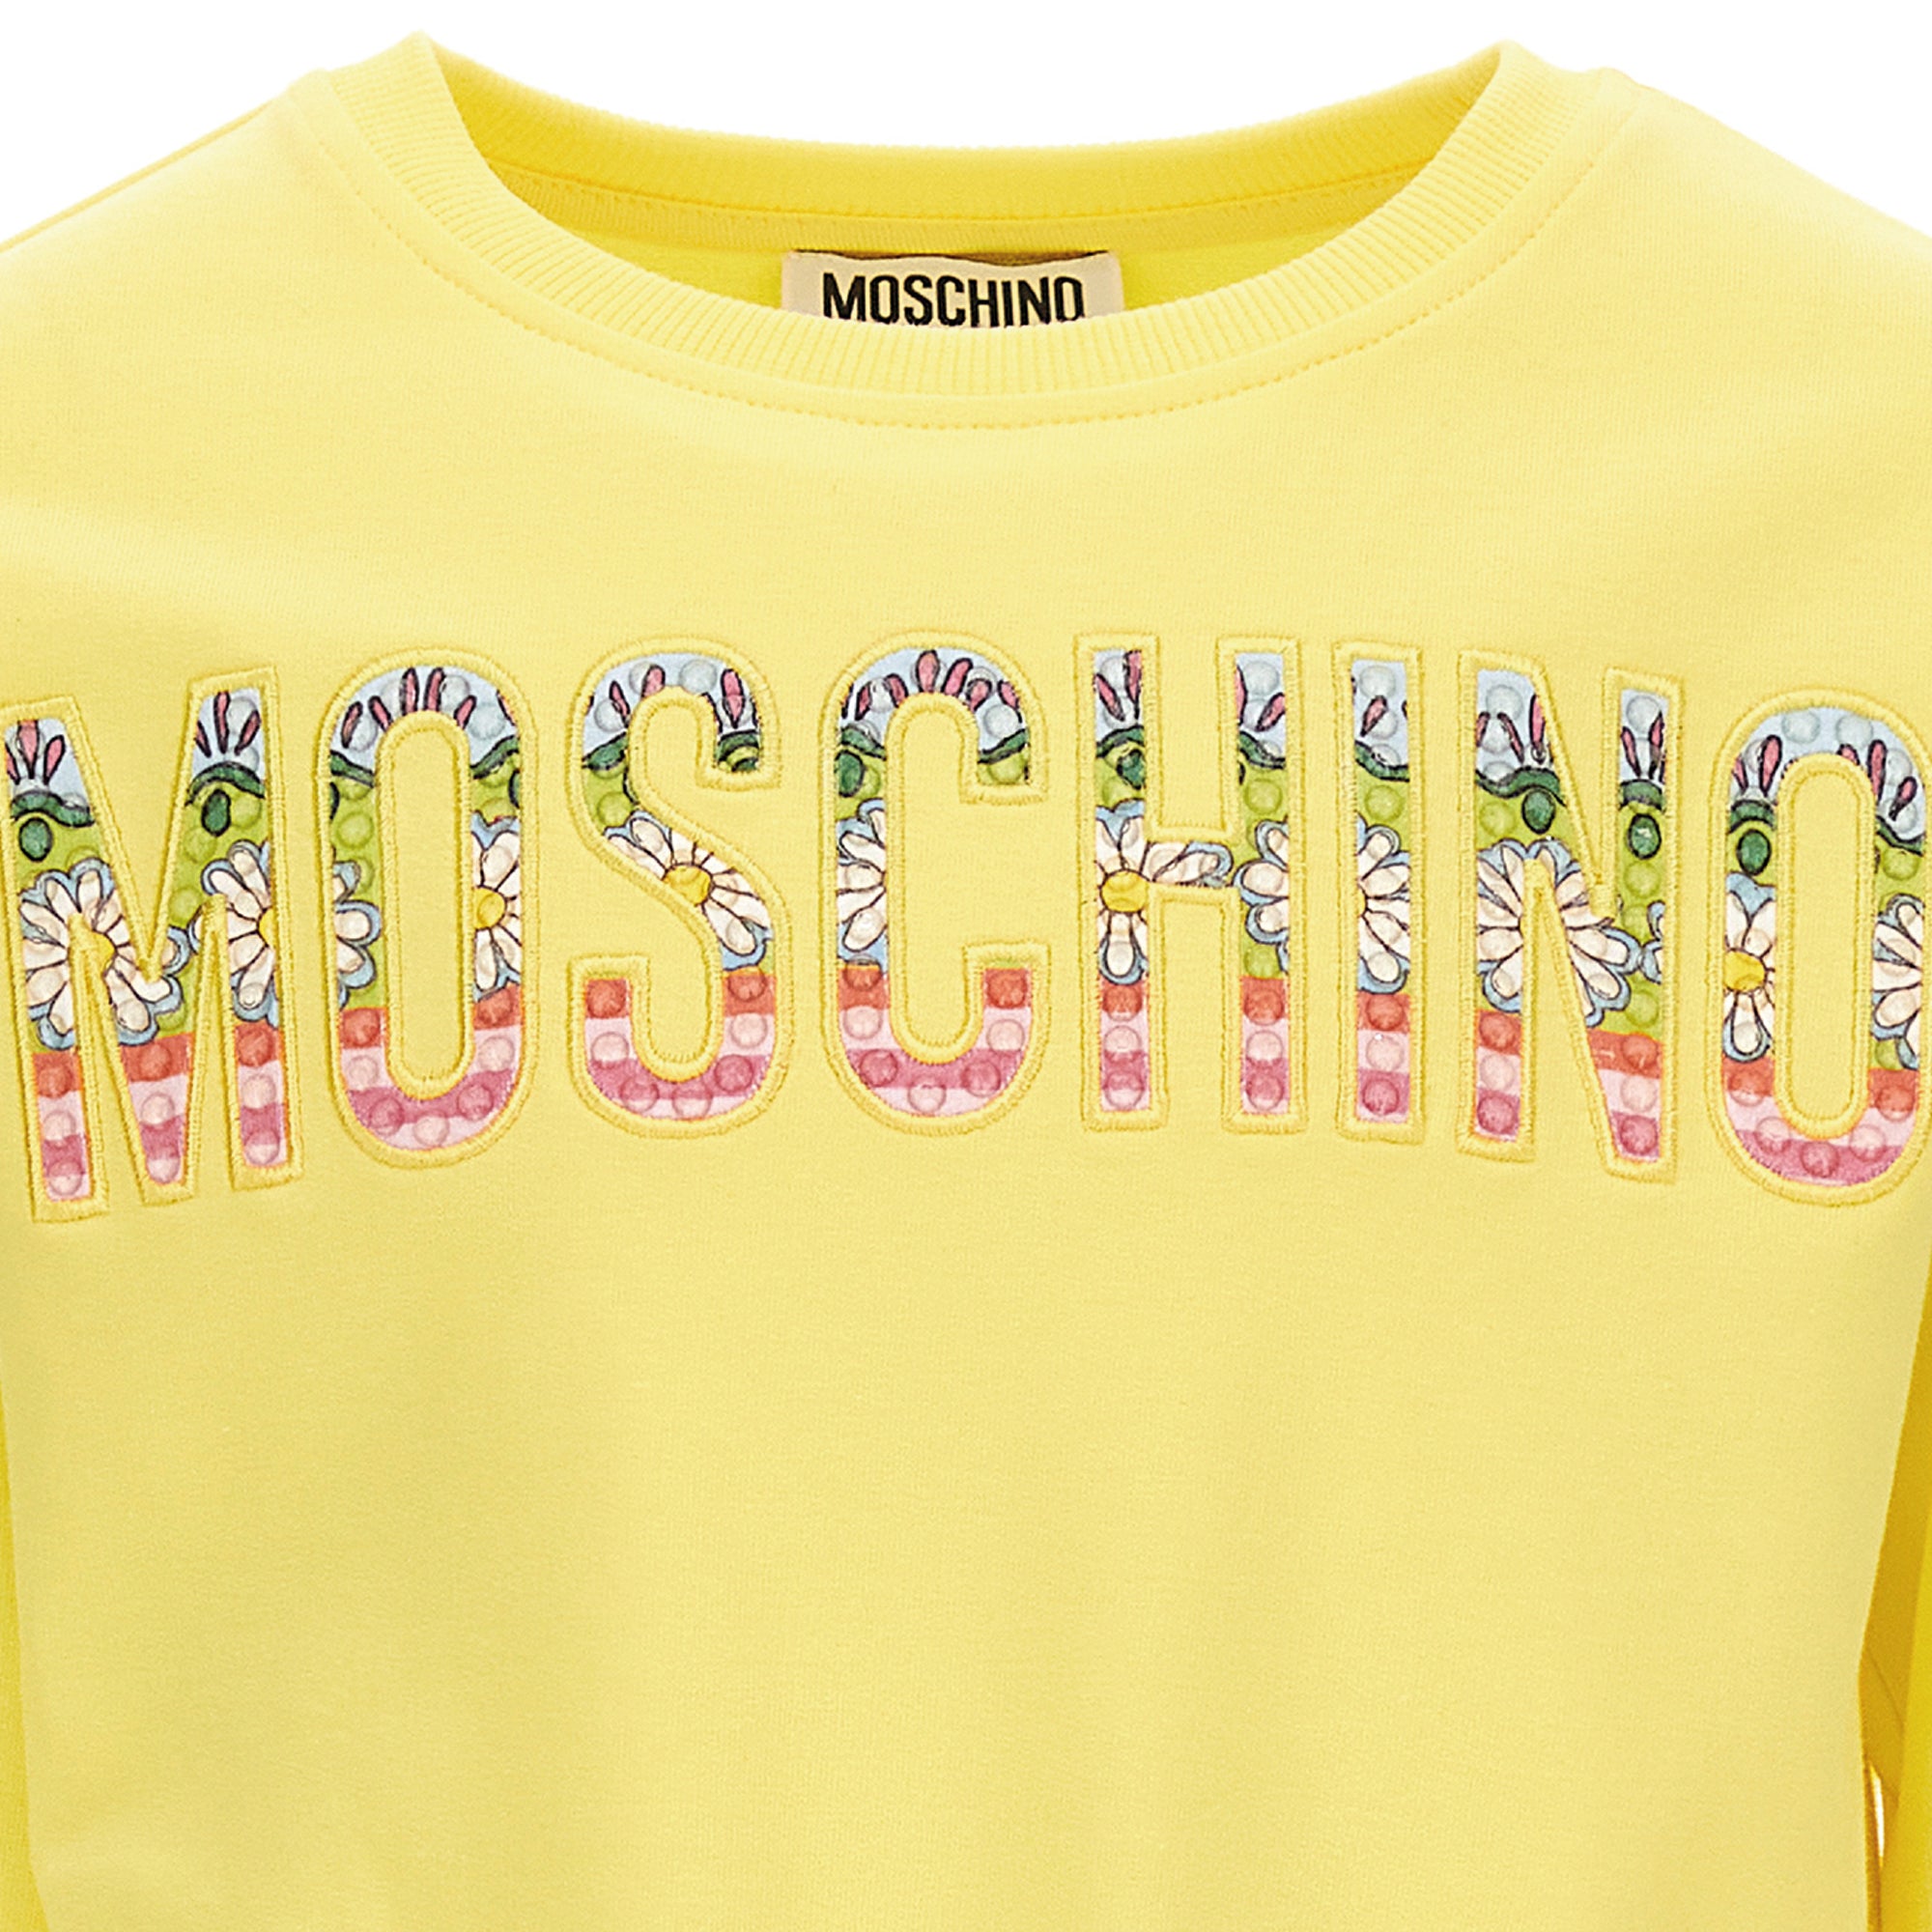 Moschino Flower Power Sweatshirt